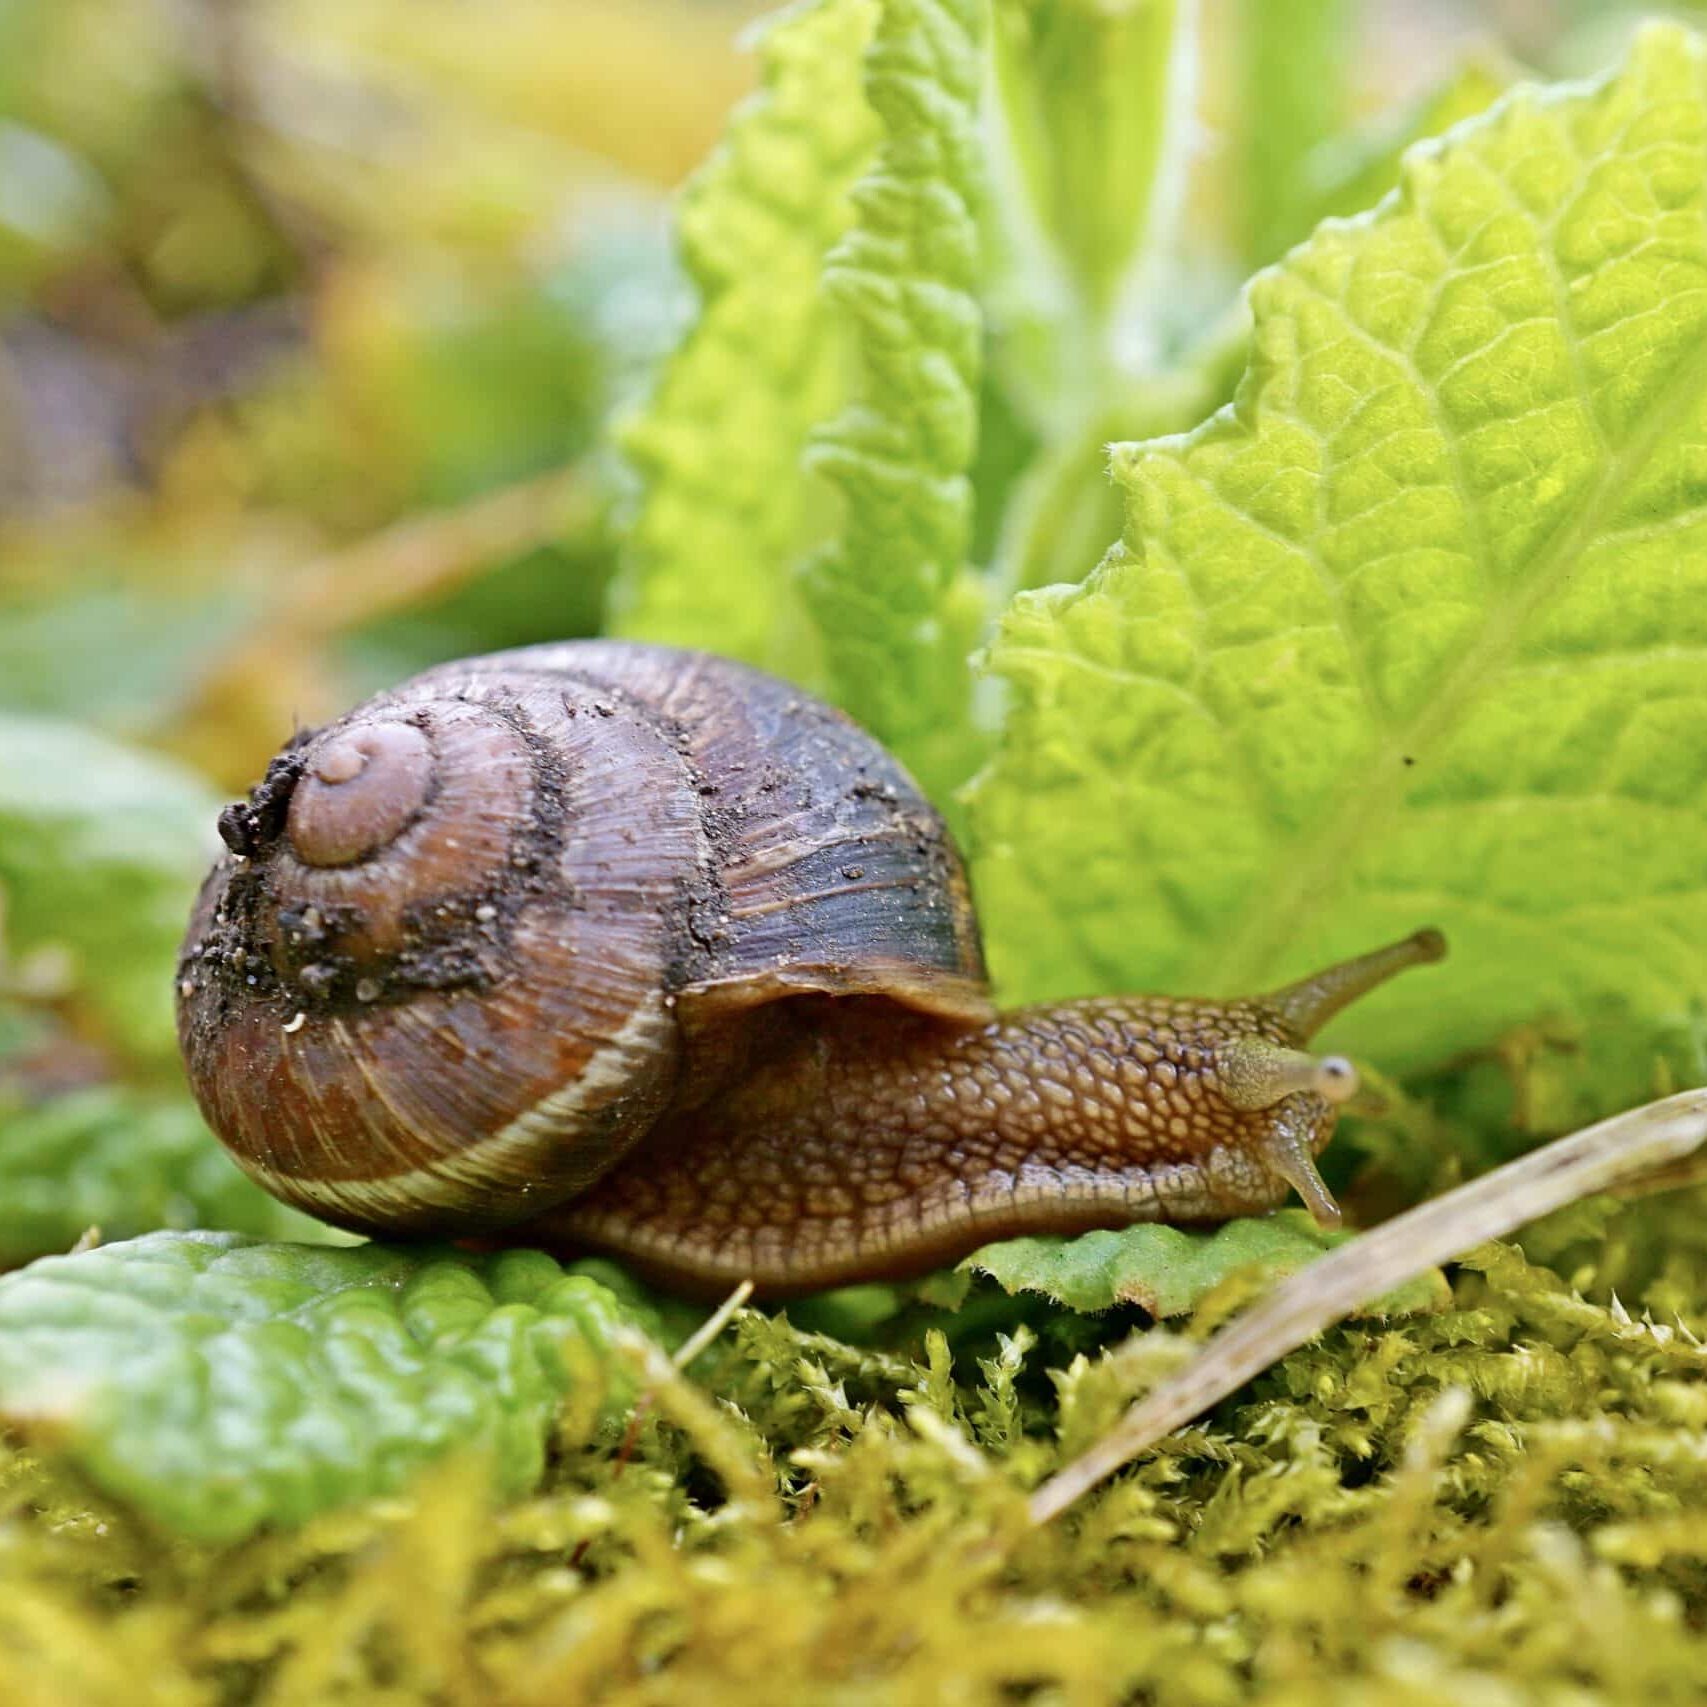 snail-in-the-garden_t20_pW9R0j